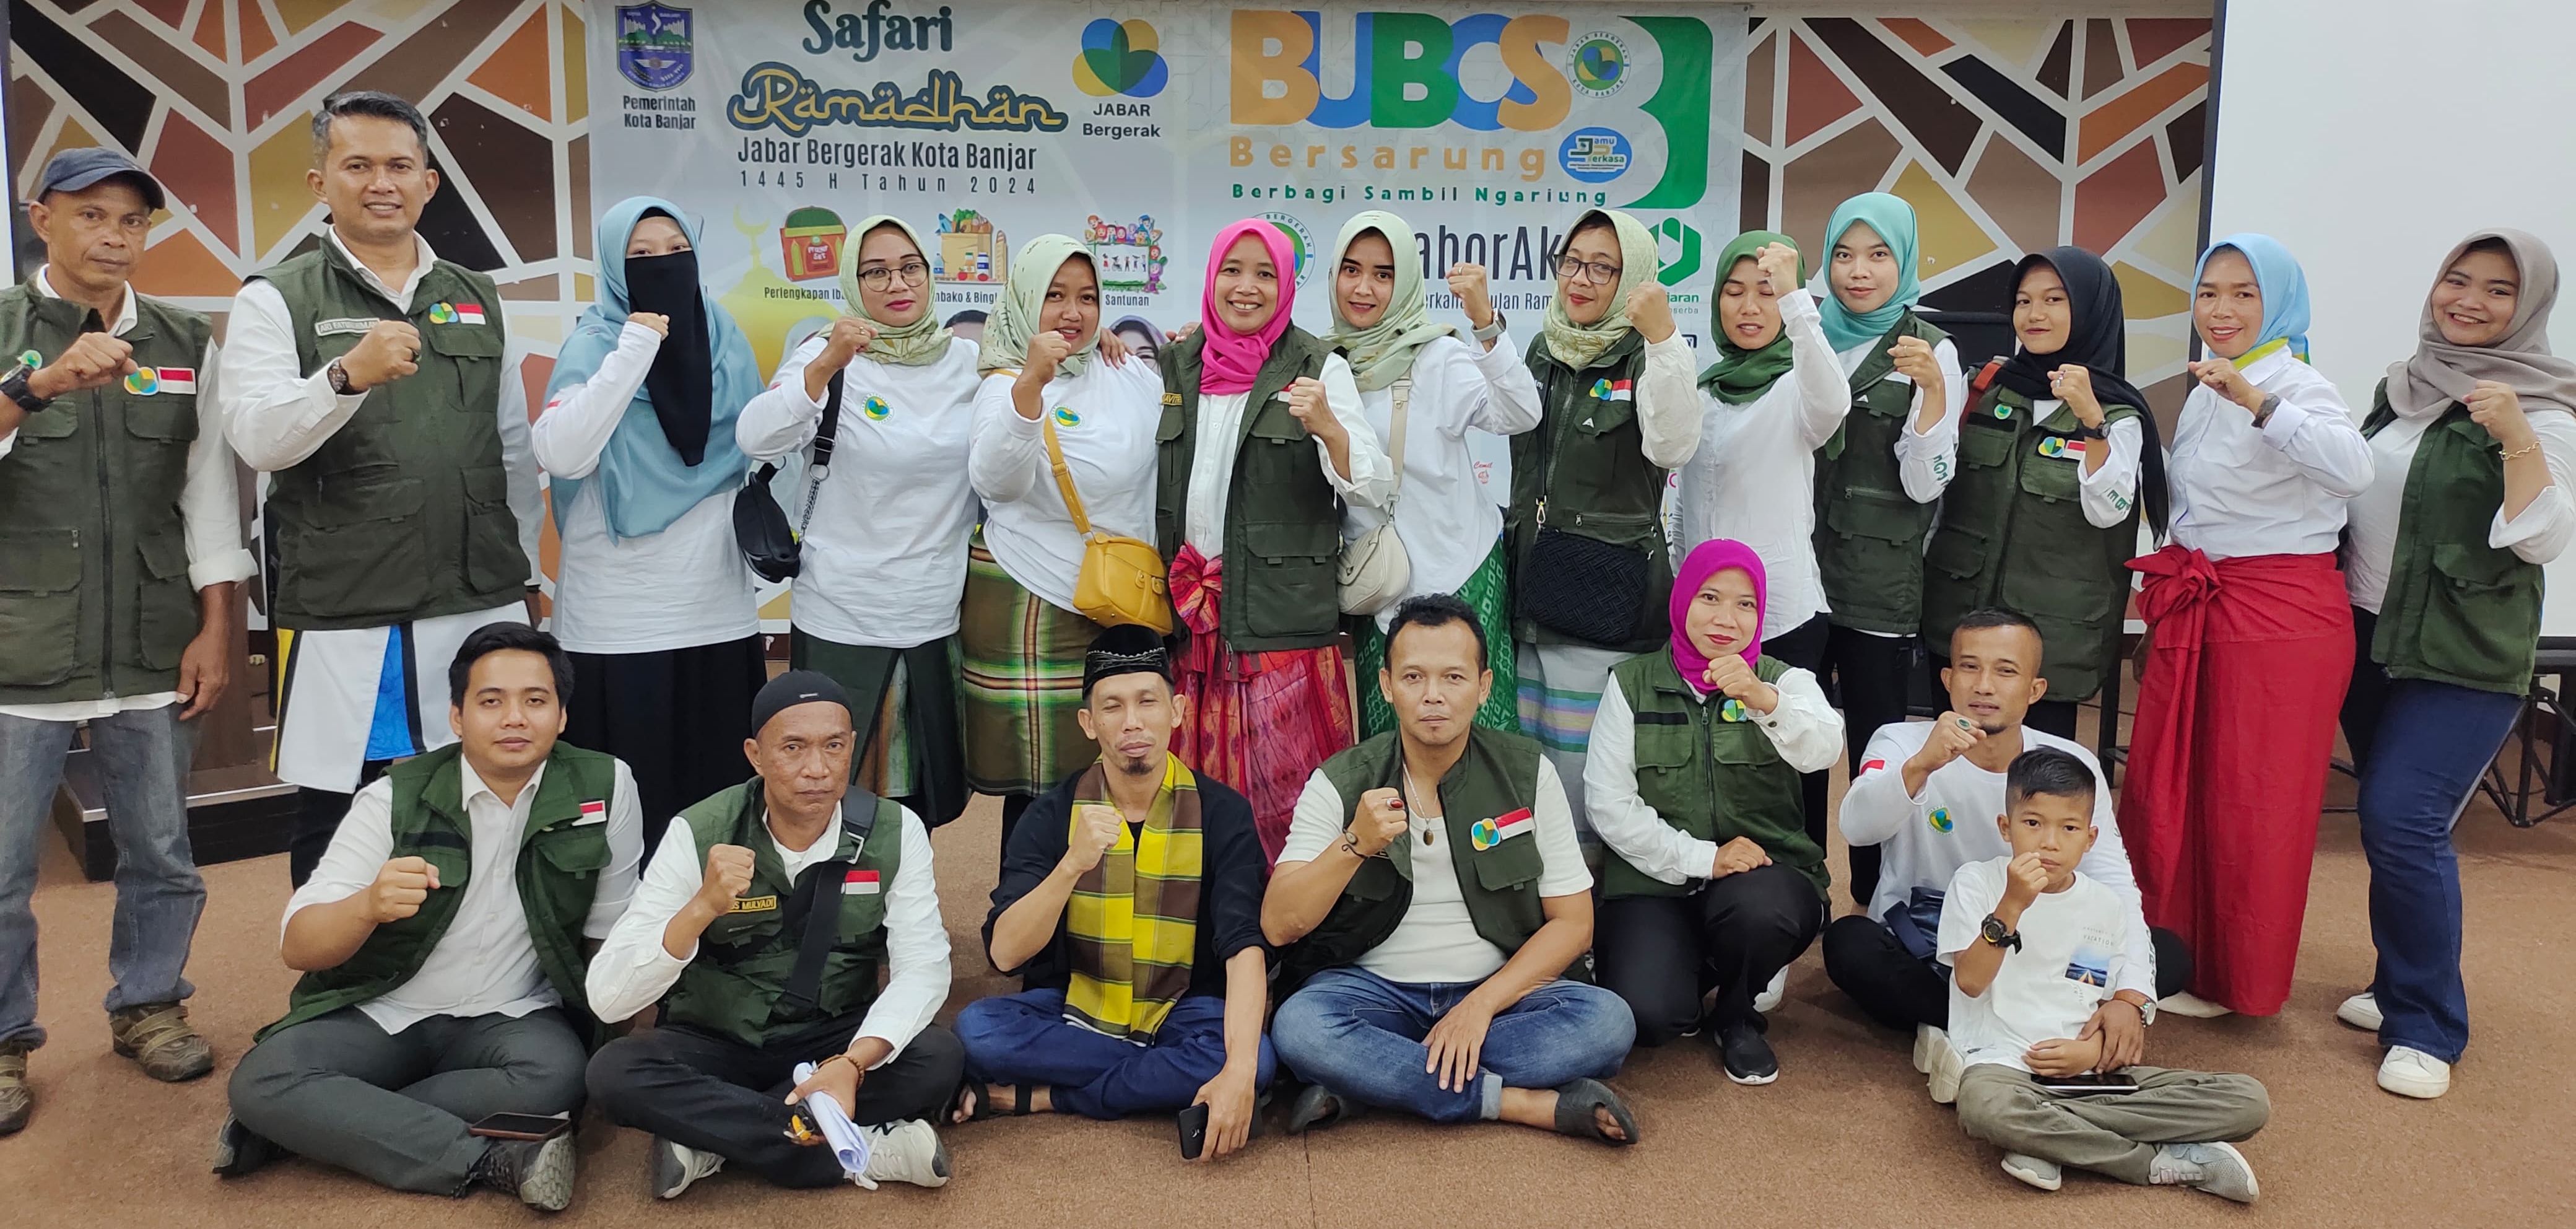 Pucak Safari Ramadan Jabar Bergerak Kota Banjar Bubos 8 dan peluncuran Jamu Perkasa di lantai 3 Toserba Pajajaran, Rabu (28/3/2024).